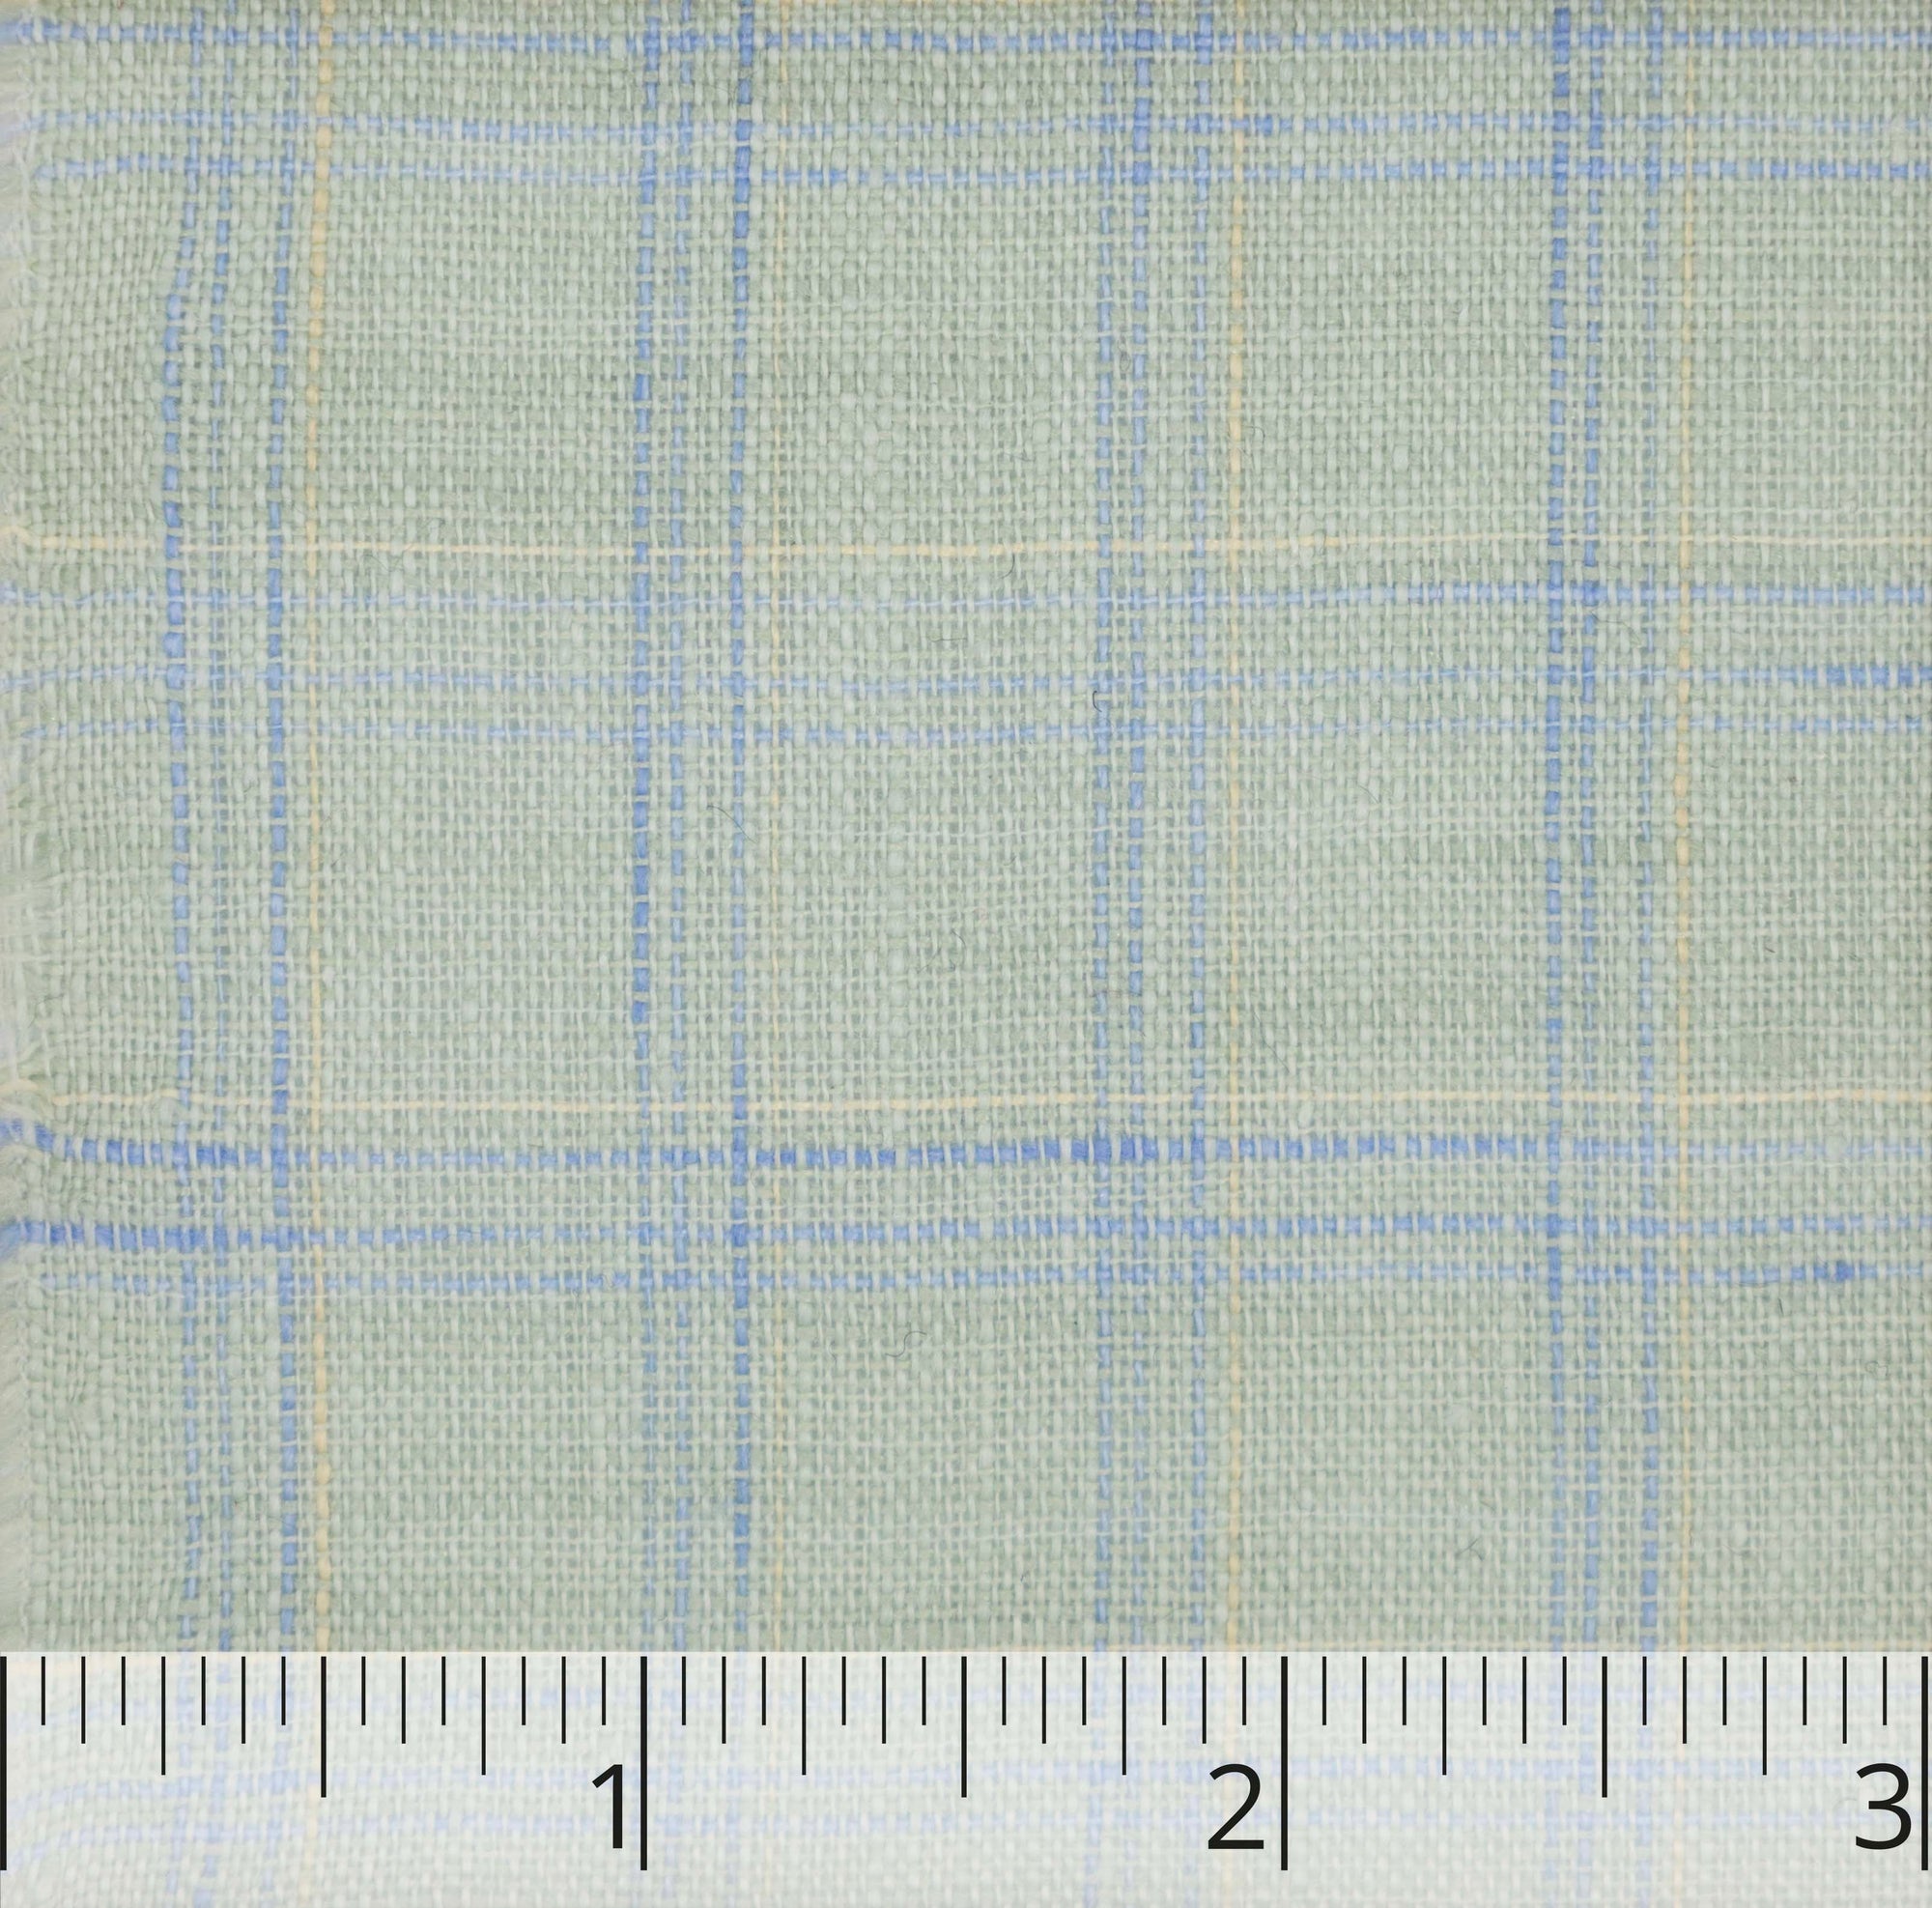 7755 Saxon Green, Blue & Pale Yellow Plaid Linen - $14.00 yd. - Burnley & Trowbridge Co.